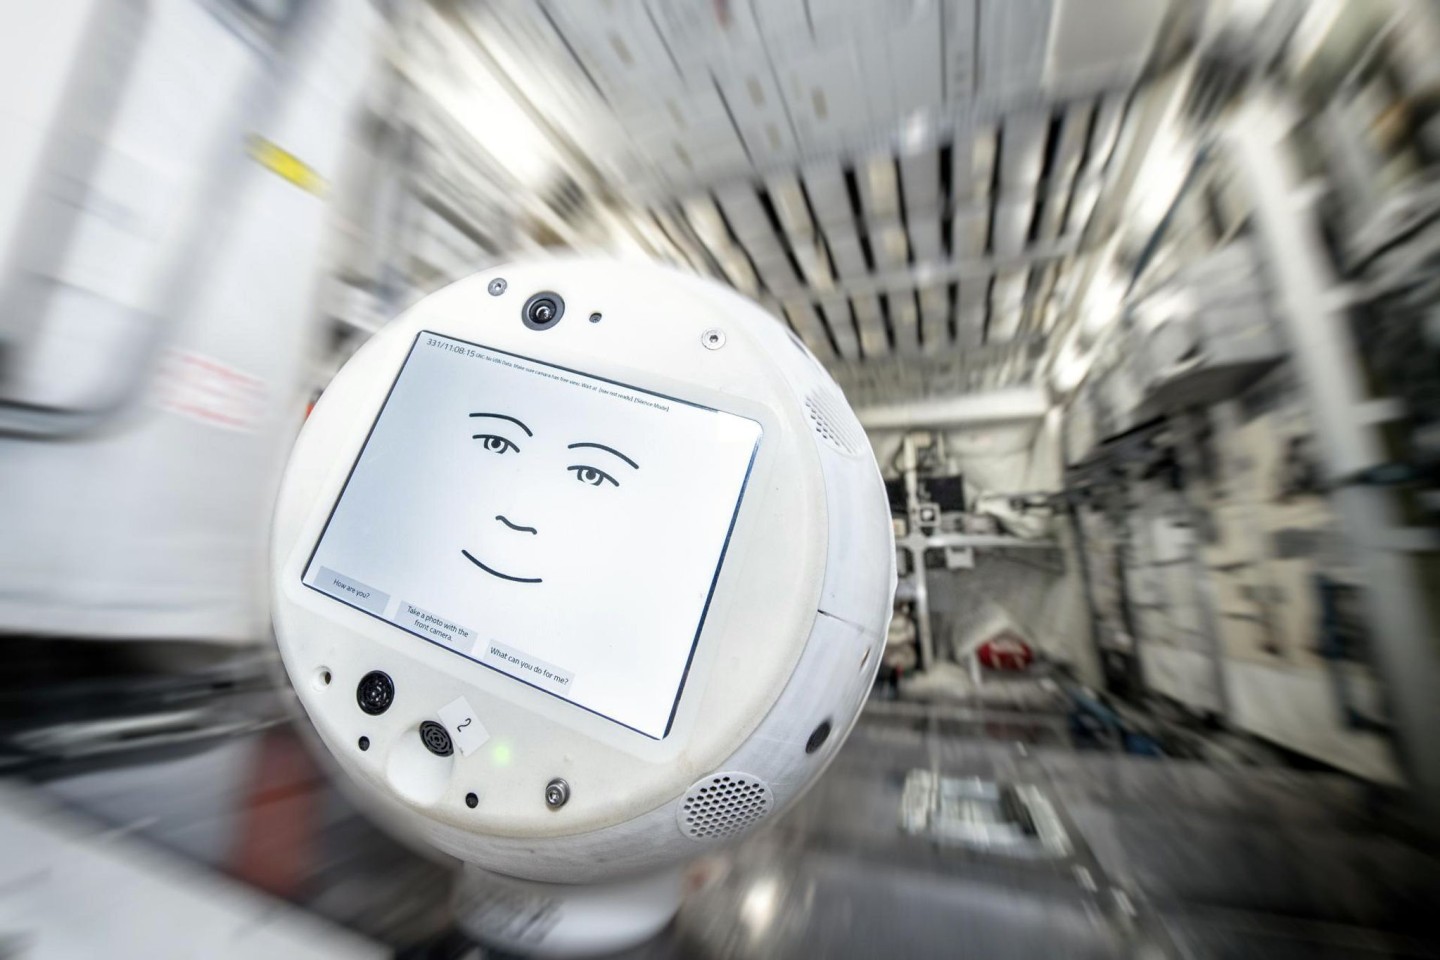 Das Assistenzsystem Cimon - der Roboter soll dem deutschen Astronauten Matthias Maurer auf der Internationalen Raumstation ISS Gesellschaft leisten.